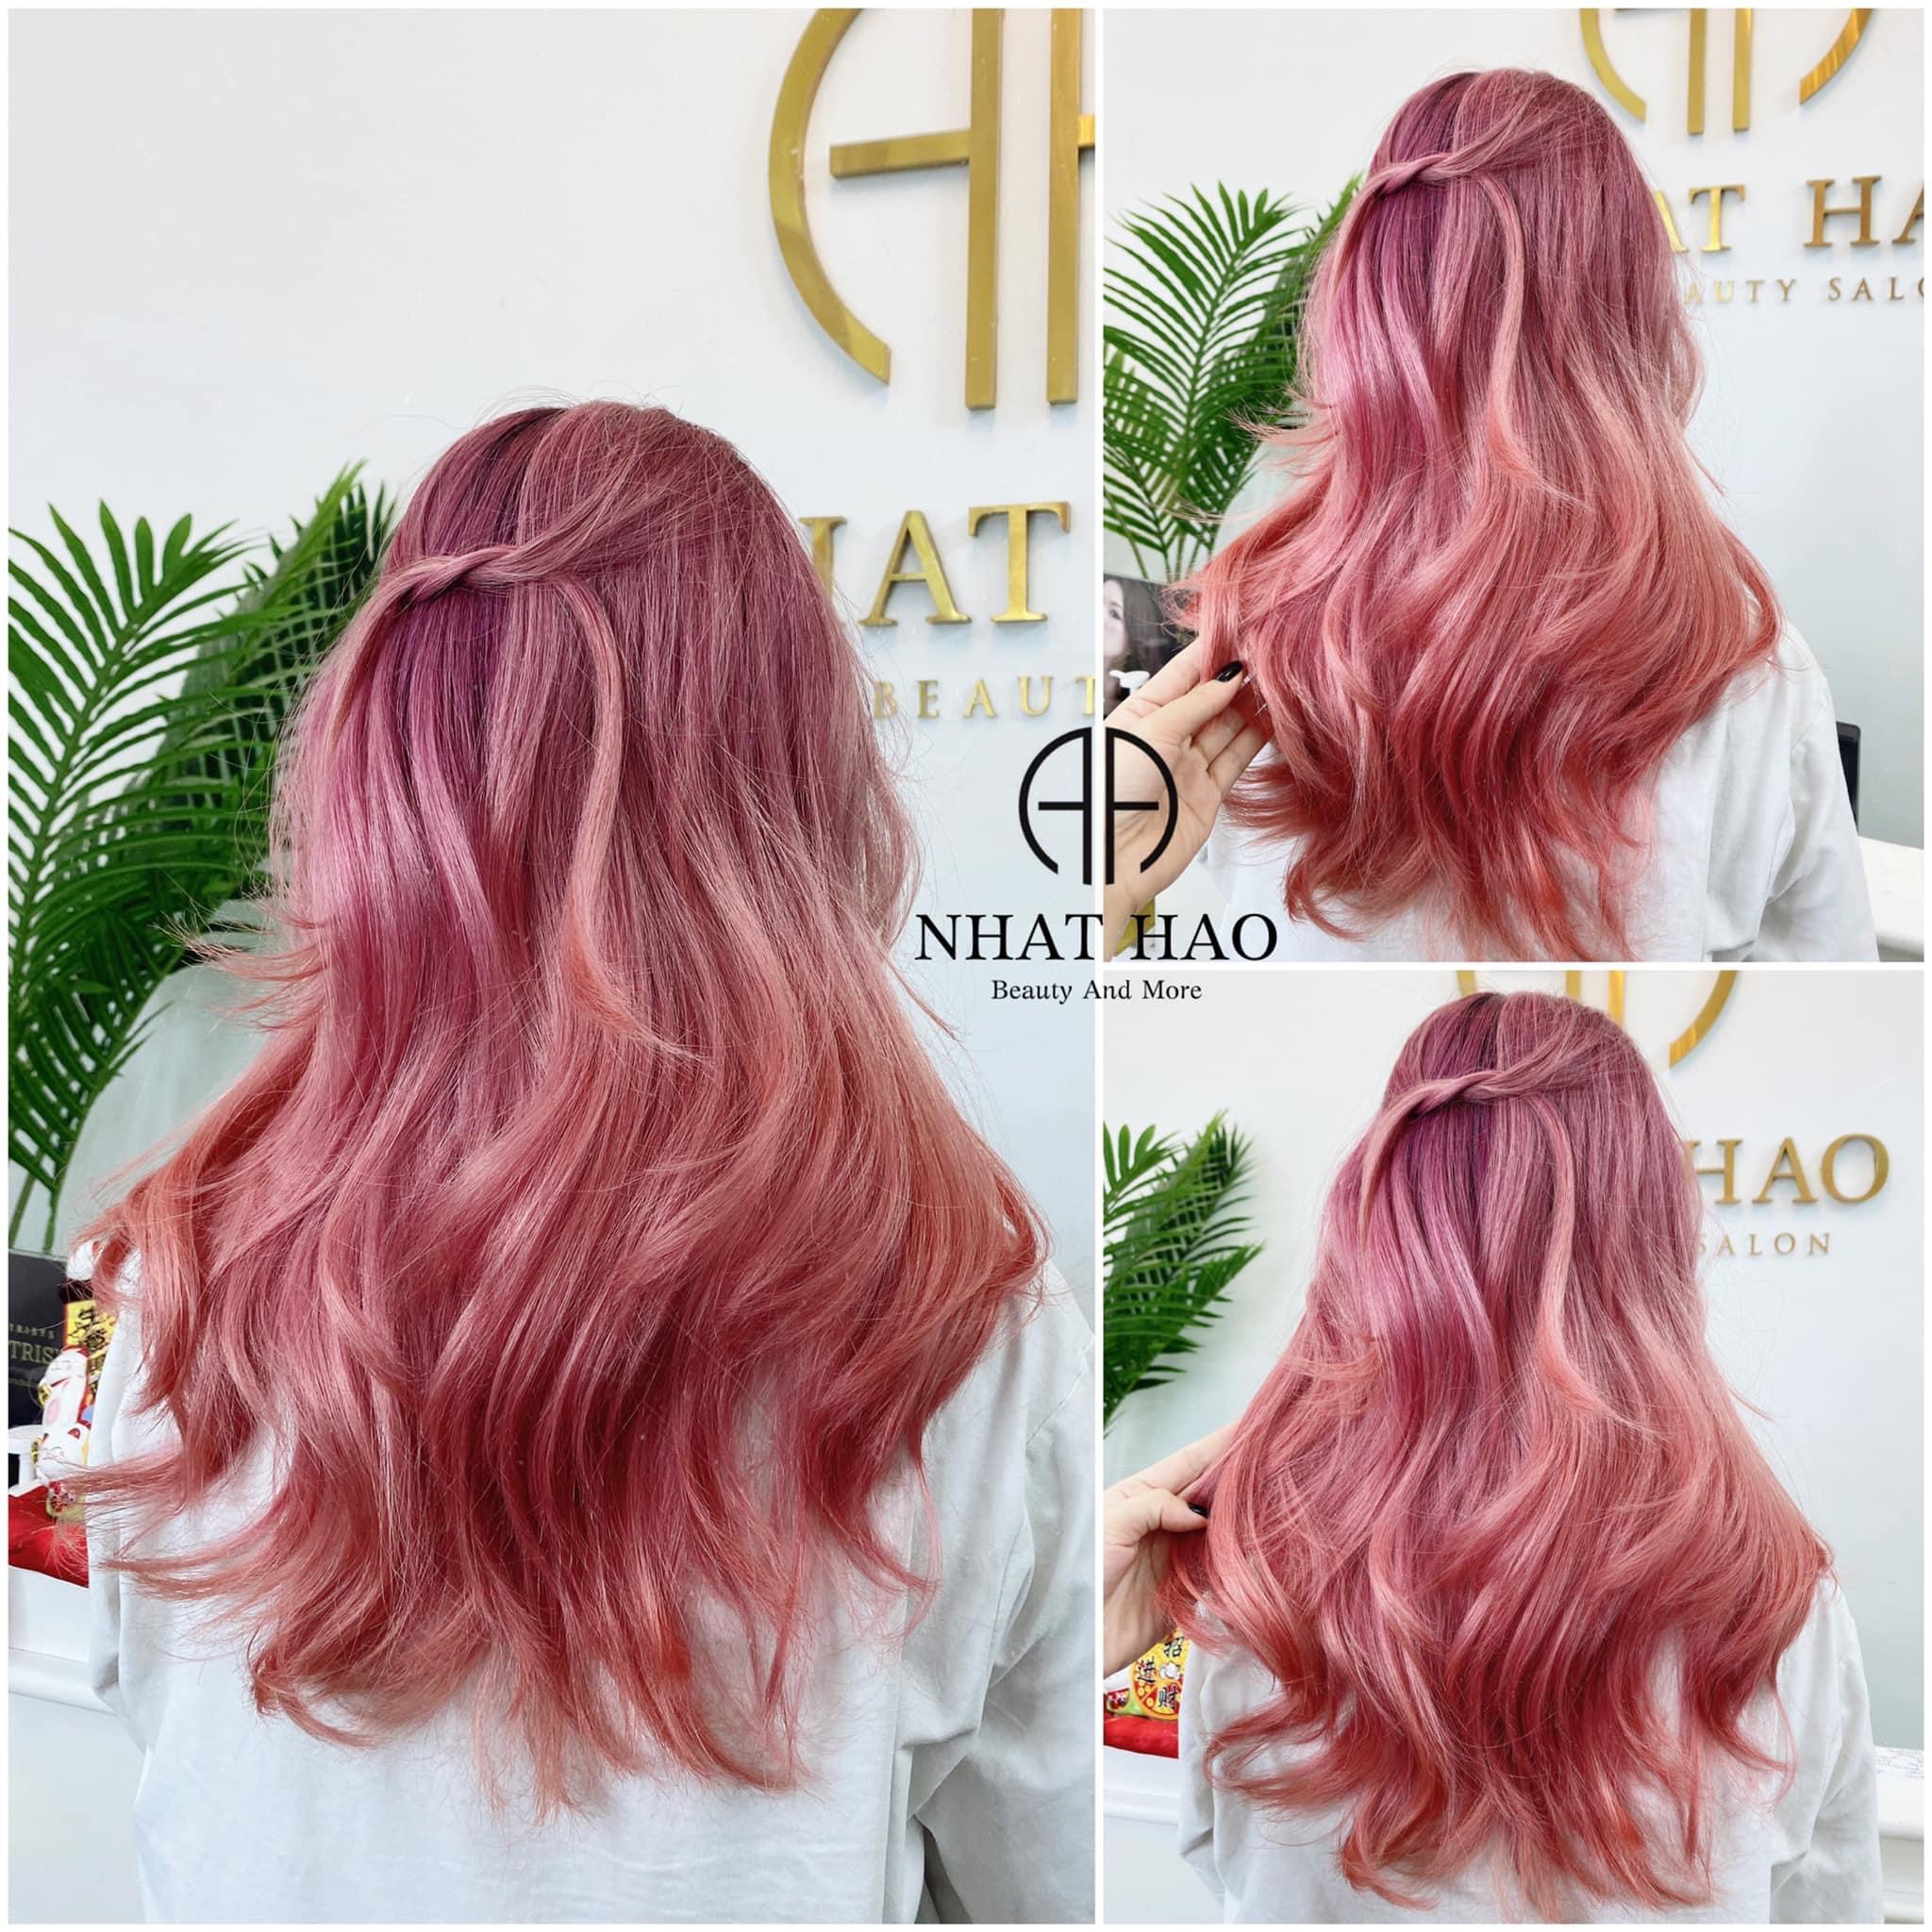 Dù làm tóc tại nhà hay ở salon, nhuộm màu tím hồng cũng là một lựa chọn đáng để thử. Hãy cùng xem hình ảnh tóc màu tím hồng đầy ấn tượng này để lấy ý tưởng cho phong cách của bạn nhé!